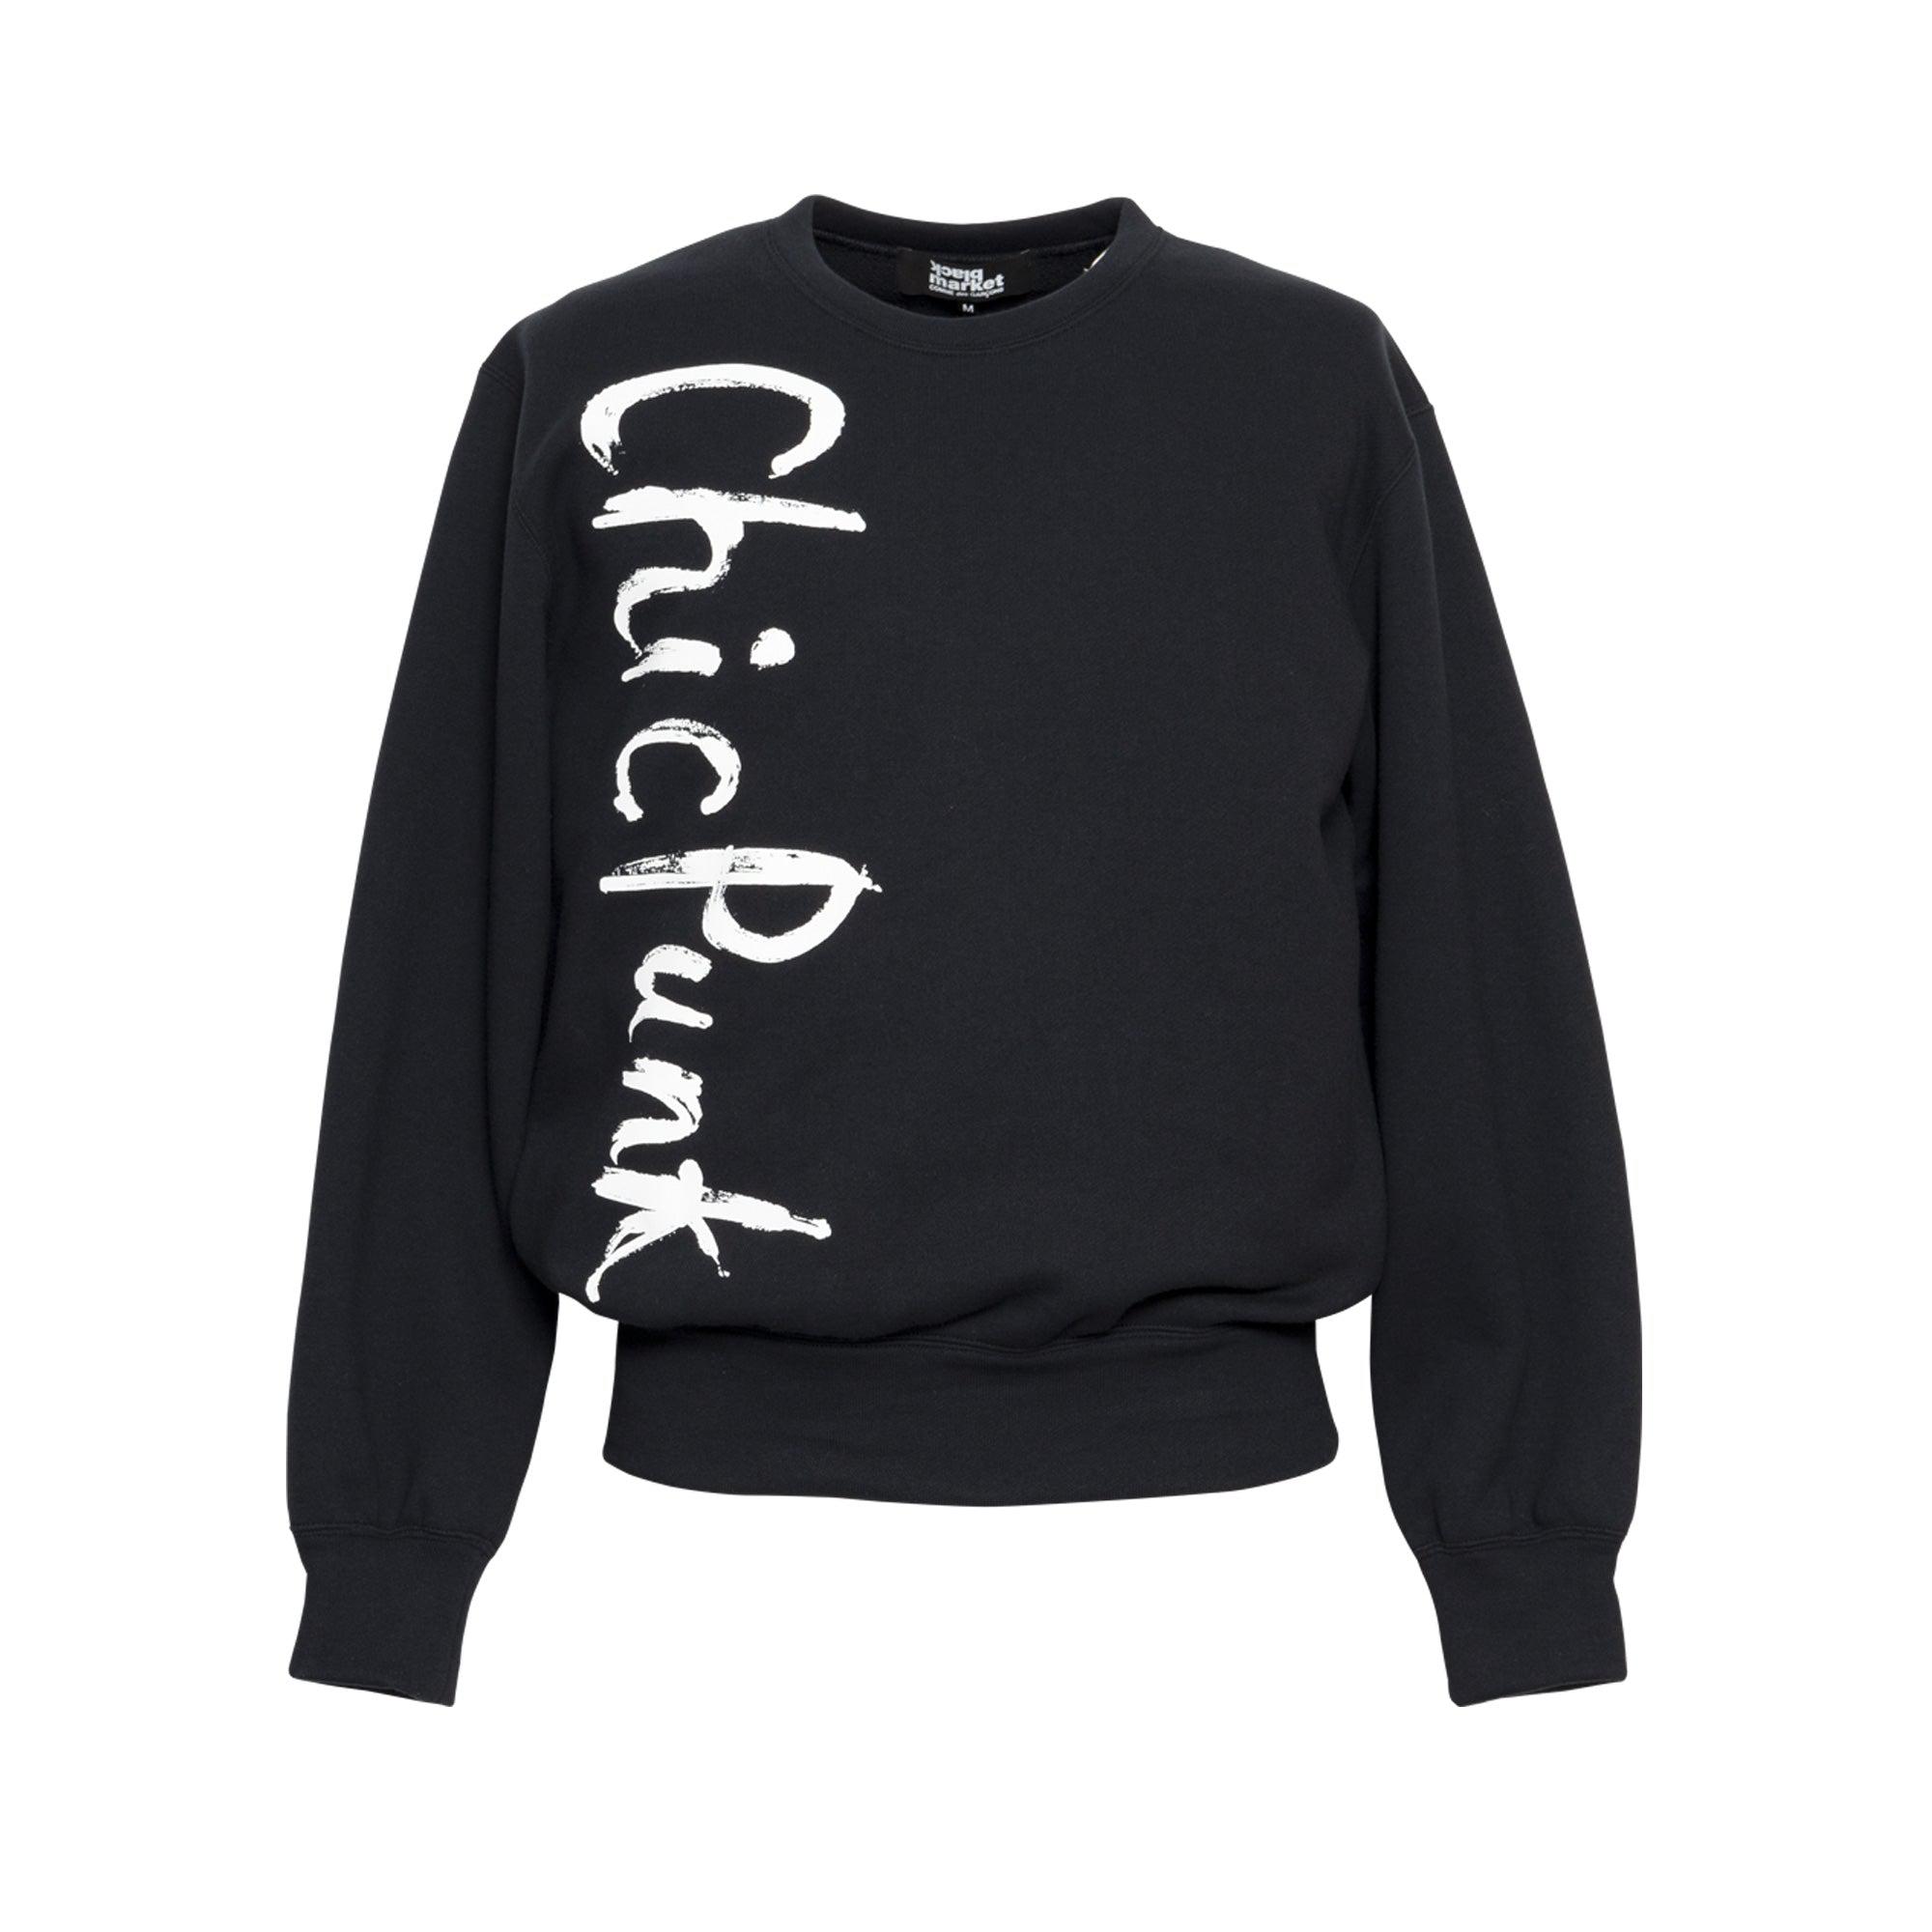 Comme des Garçons Black Market Archive Chic Punk Sweatshirt (Black) by BLACK MARKET